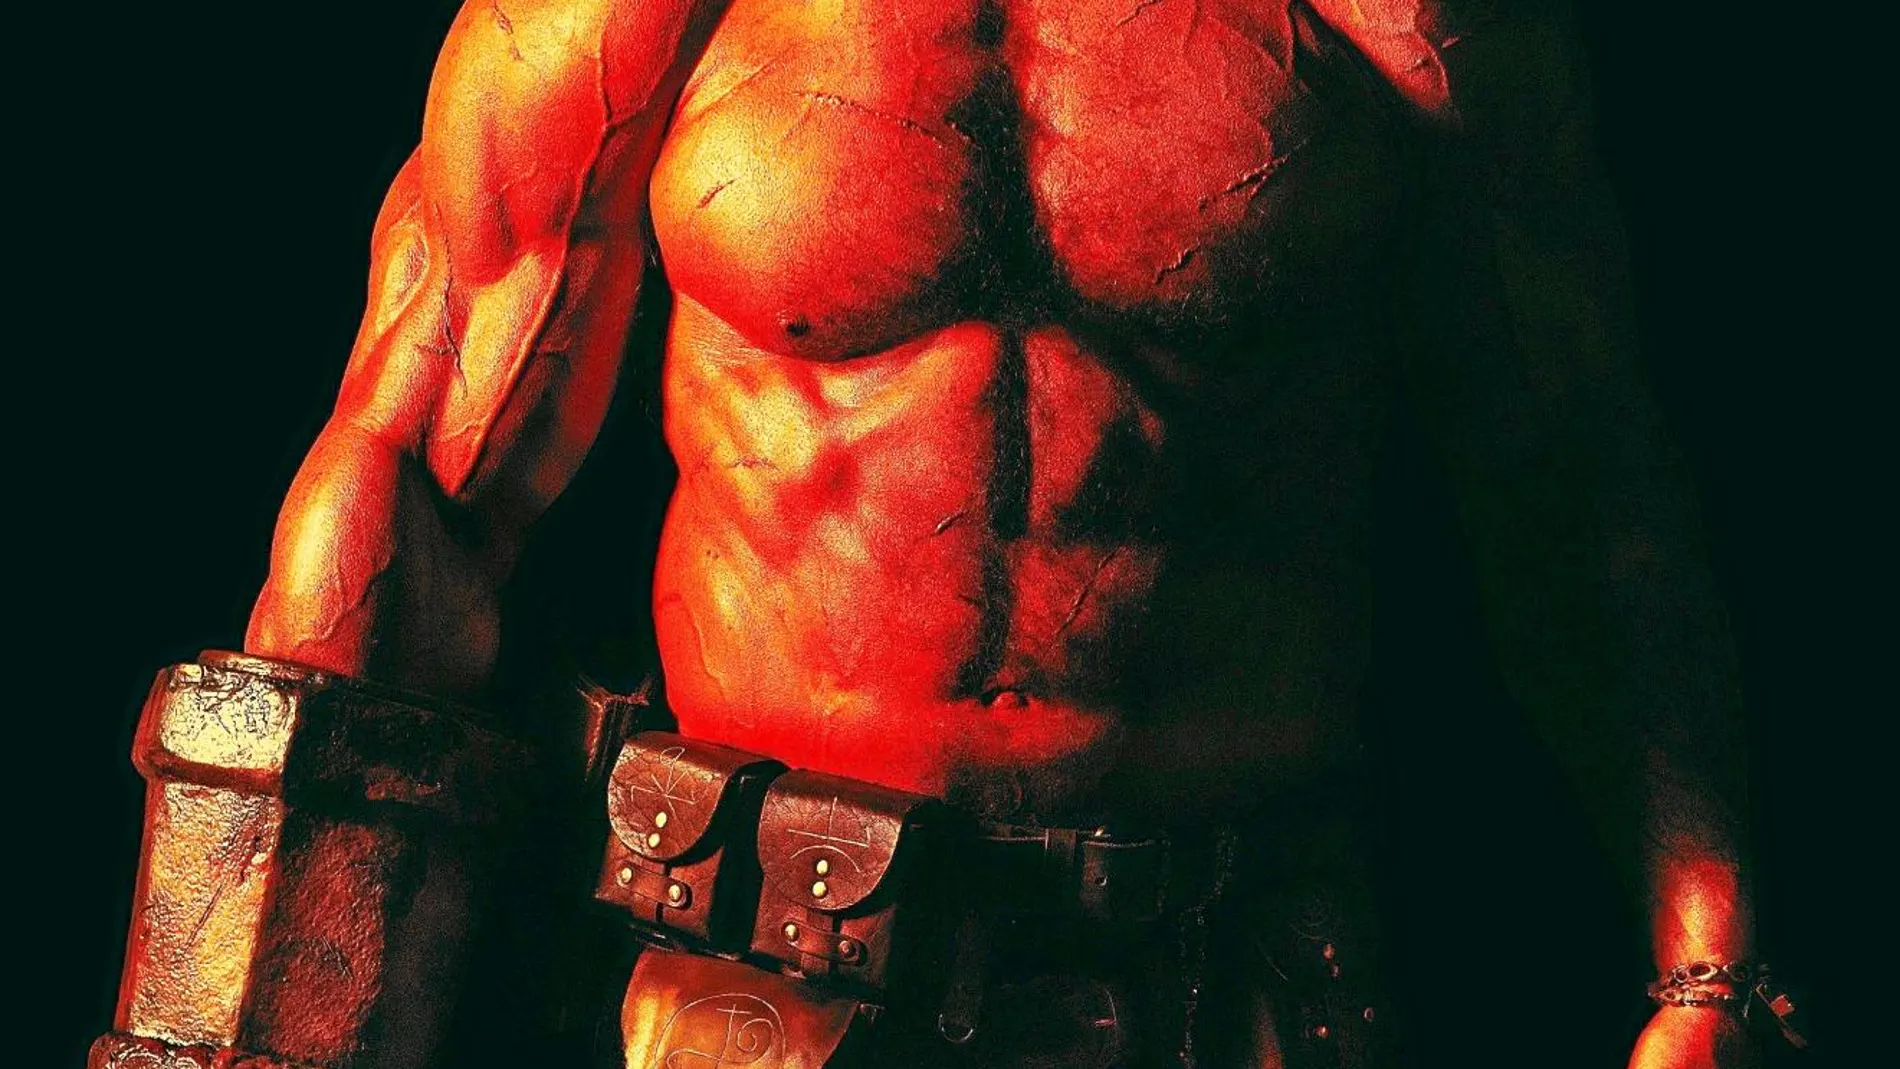 David Harbour interpreta a un Hellboy que lucha con una crisis de identidad y se debate entre hacer el bien y seguir su supuesto instinto destructivo